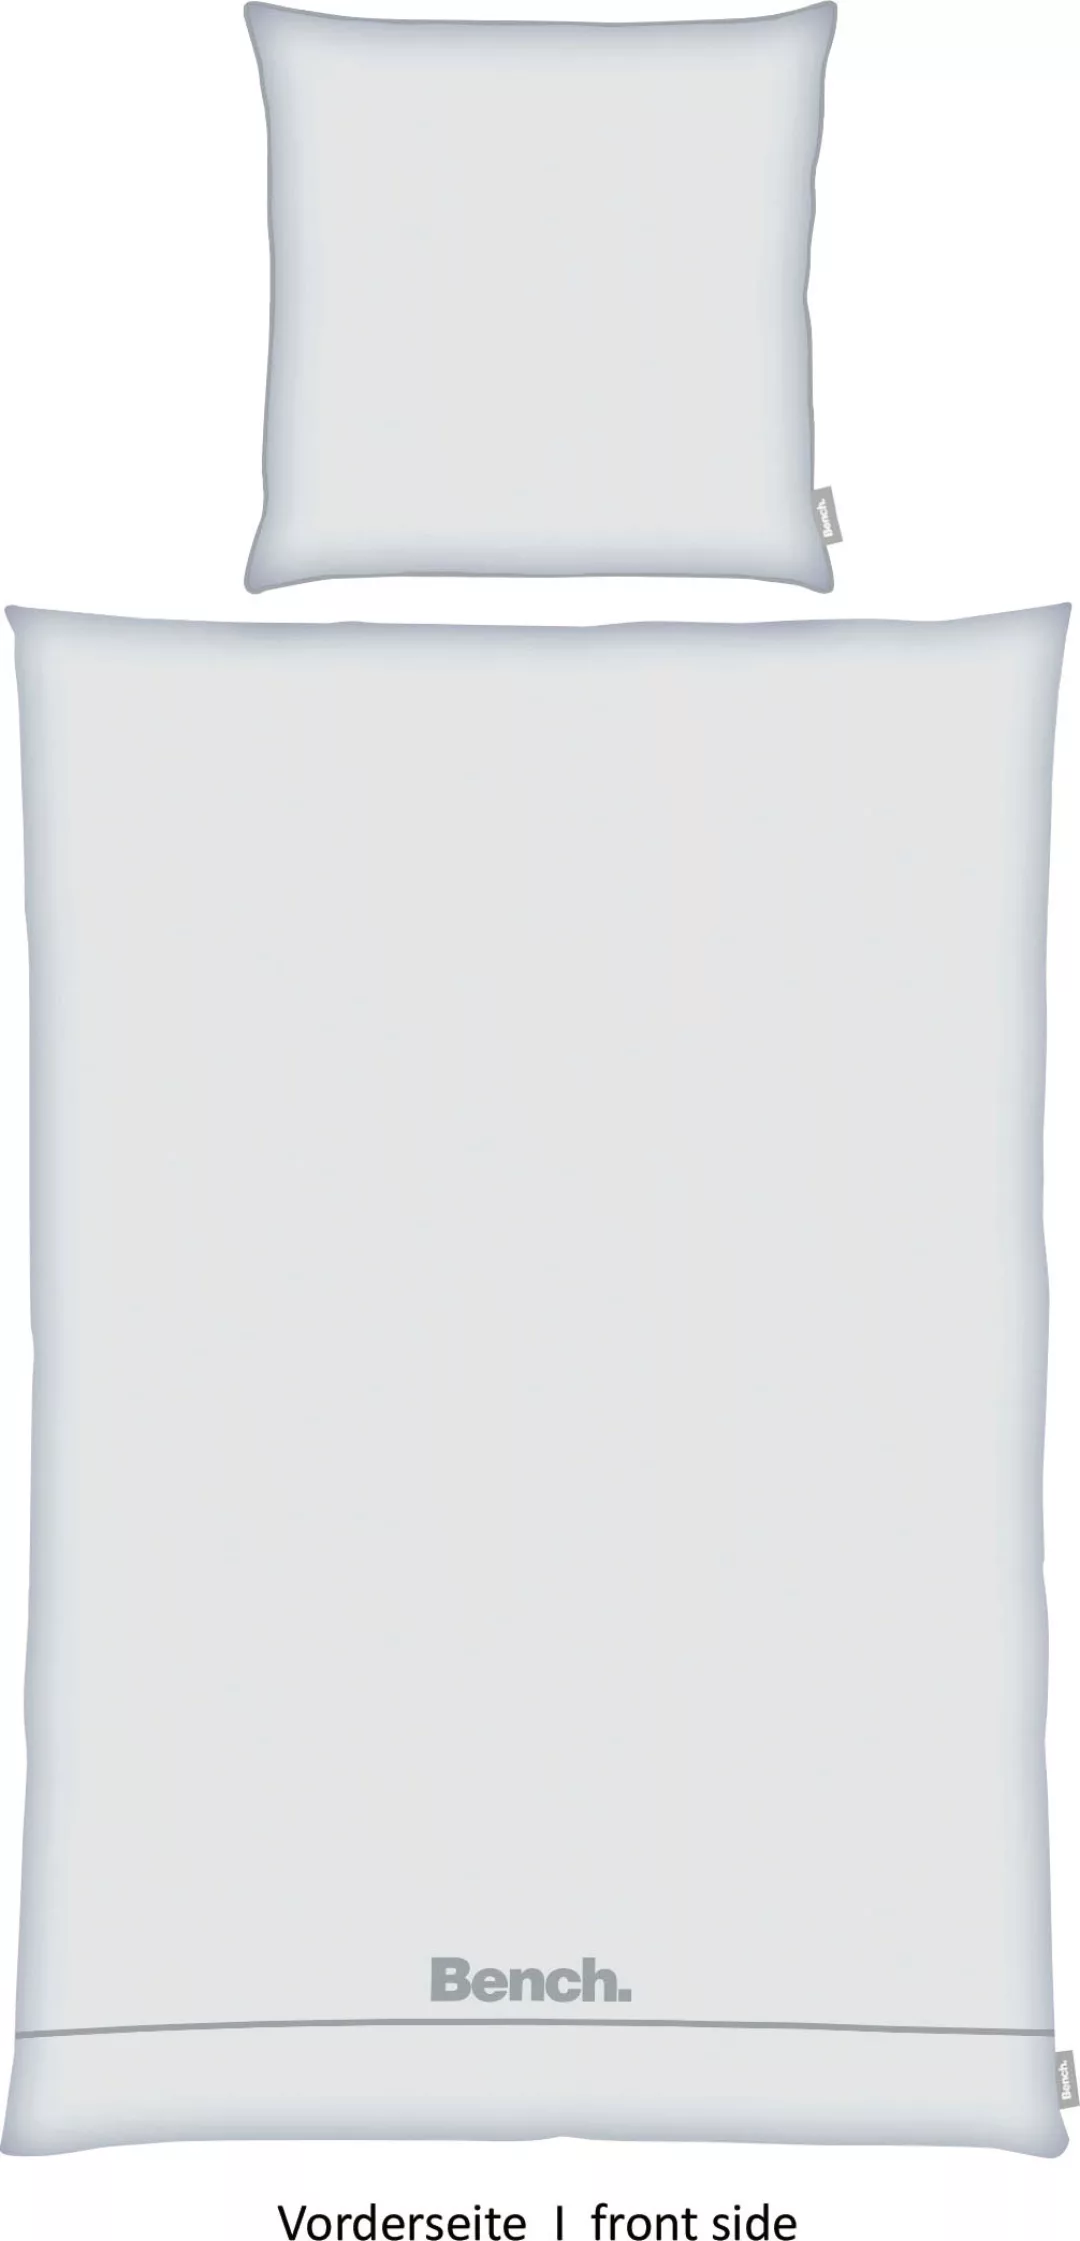 Bench. Wendebettwäsche »Bench«, Kissenbezug mit dekorativer Paspel günstig online kaufen